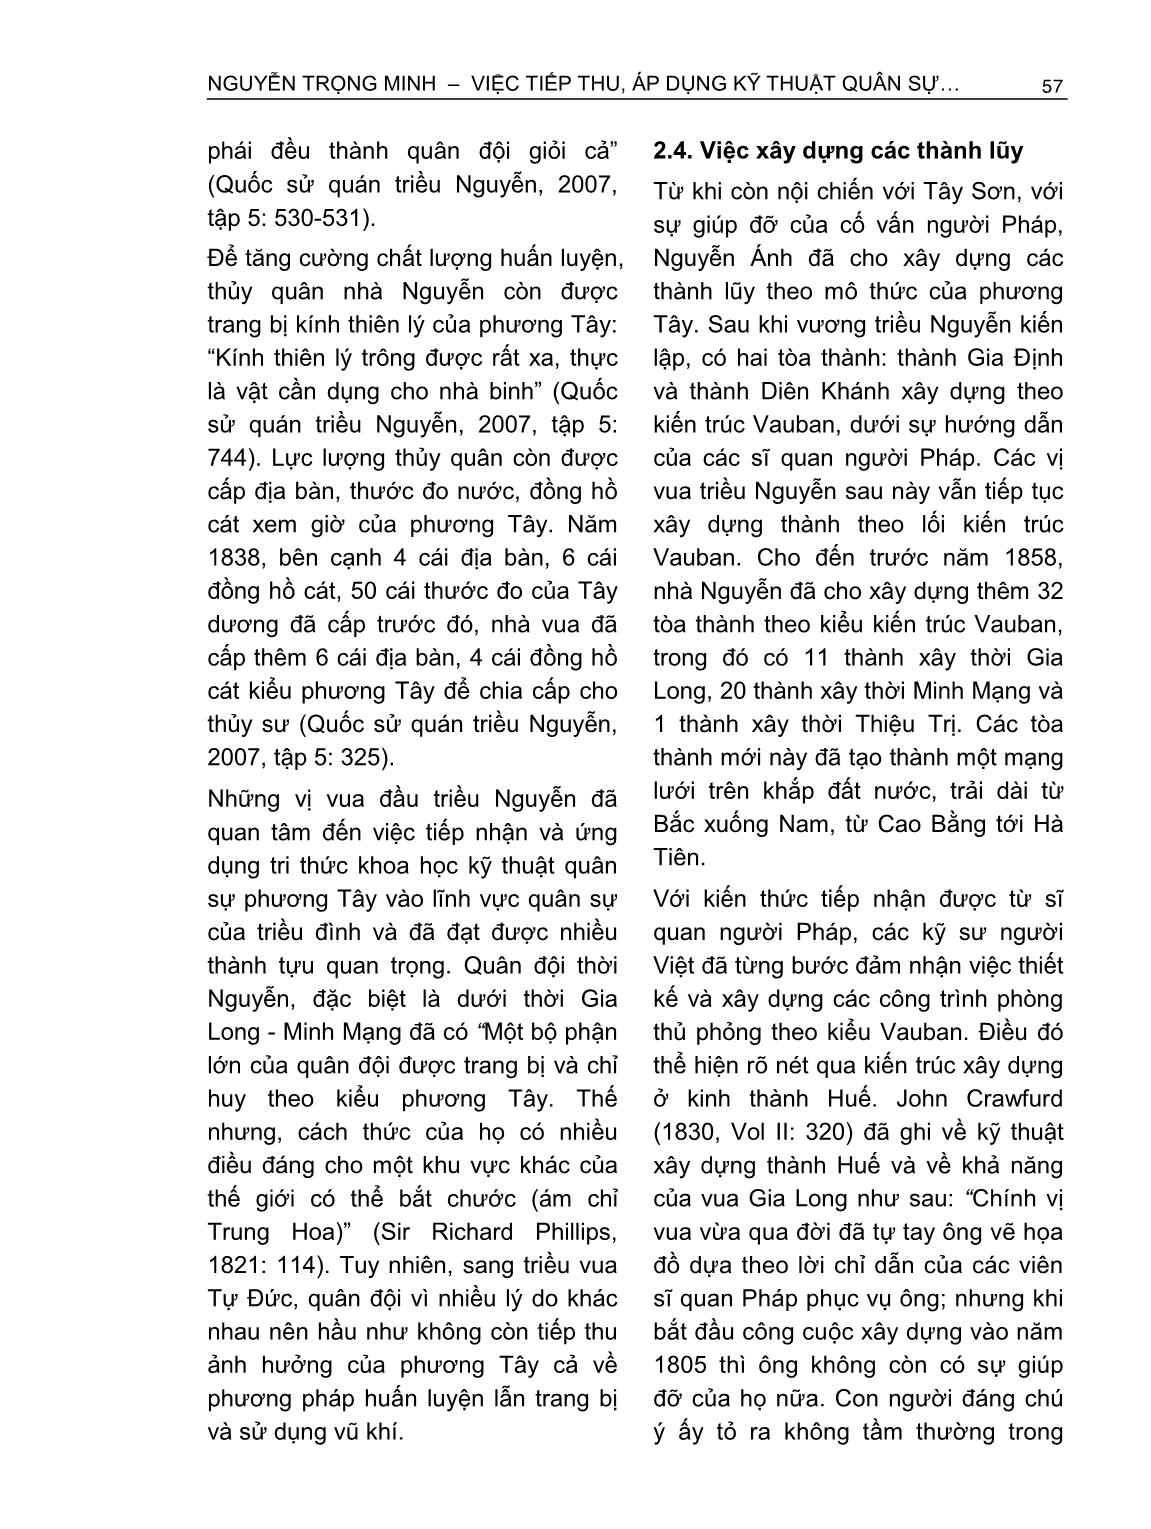 Việc tiếp thu, áp dụng kỹ thuật quân sự phương Tây của triều Nguyễn (1802-1858) trang 8